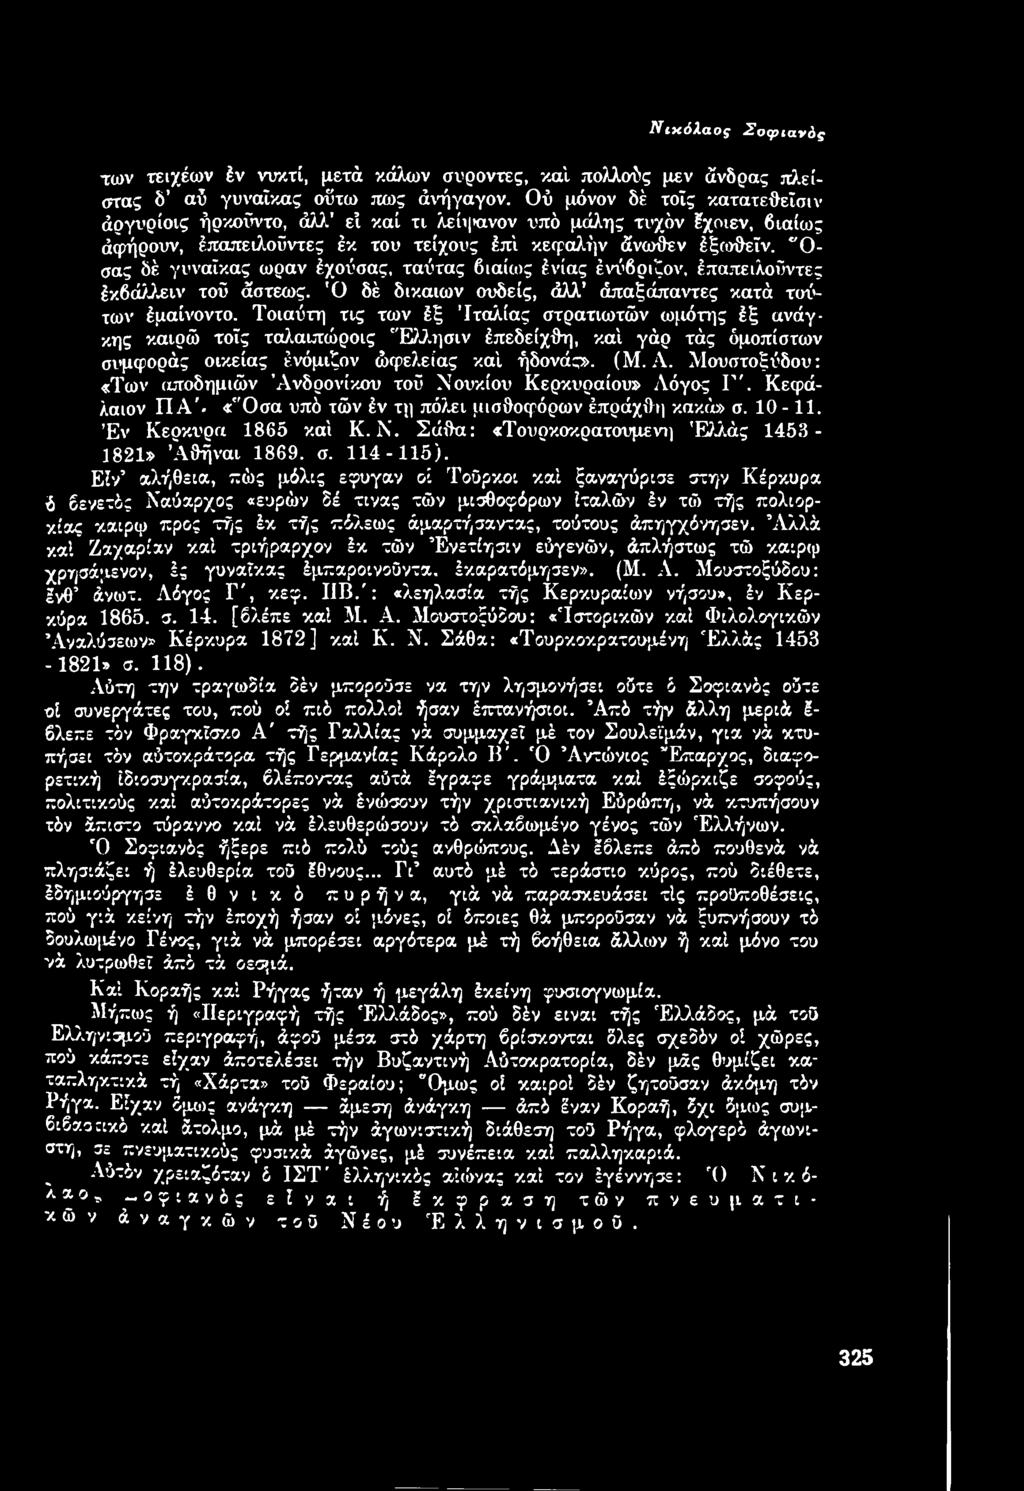 Μουστοξύδου: «Των αποδημιών Ανδρονίκου τοΰ Νουκίου Κερκυραίου» Λόγος Γ \ Κεφάλαιον Π Α '. «'Ό σα υπό τών έν τη πόλει μισθοφόρων έπράχθη κακά» σ. 10-11. Έ ν Κέρκυρα I8 6 0 καί Κ. Ν. Σάθα: «Τουρκοκρατούμενη 'Ελλάς 1453-1821» Ά θήναι 1869.